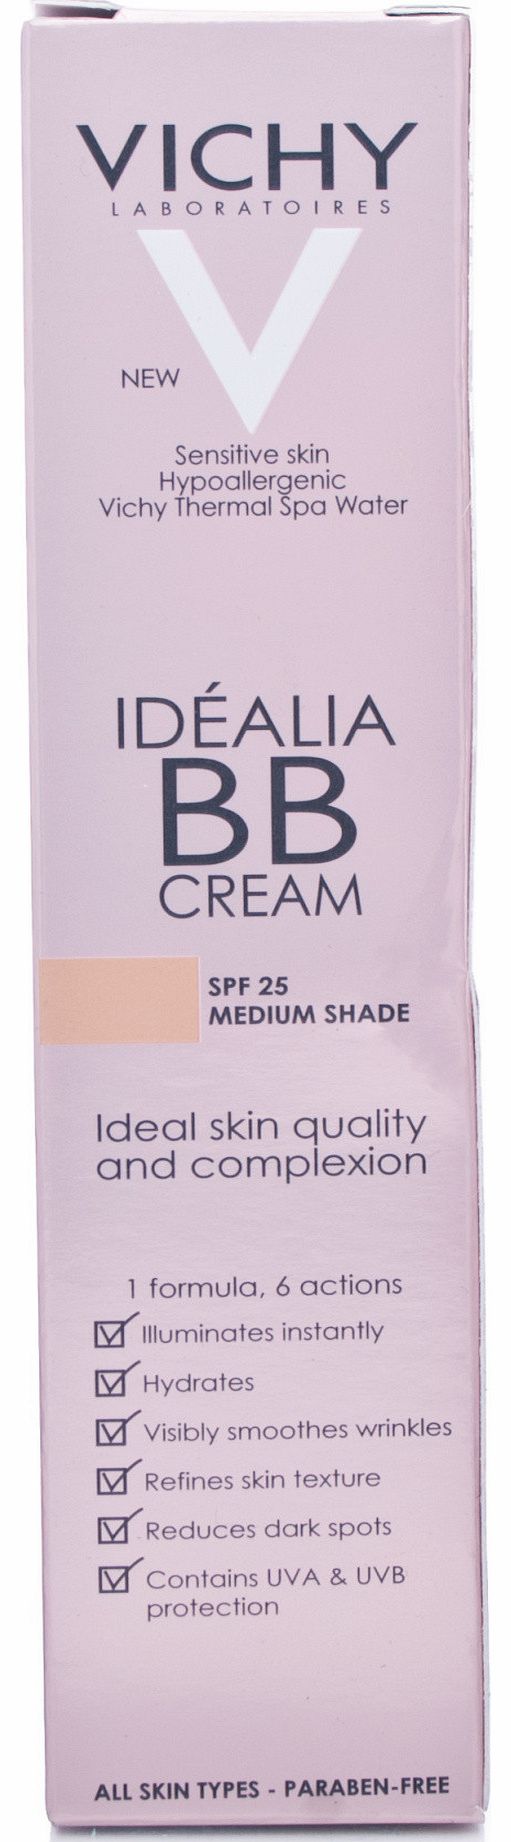 Idealia BB Cream Medium